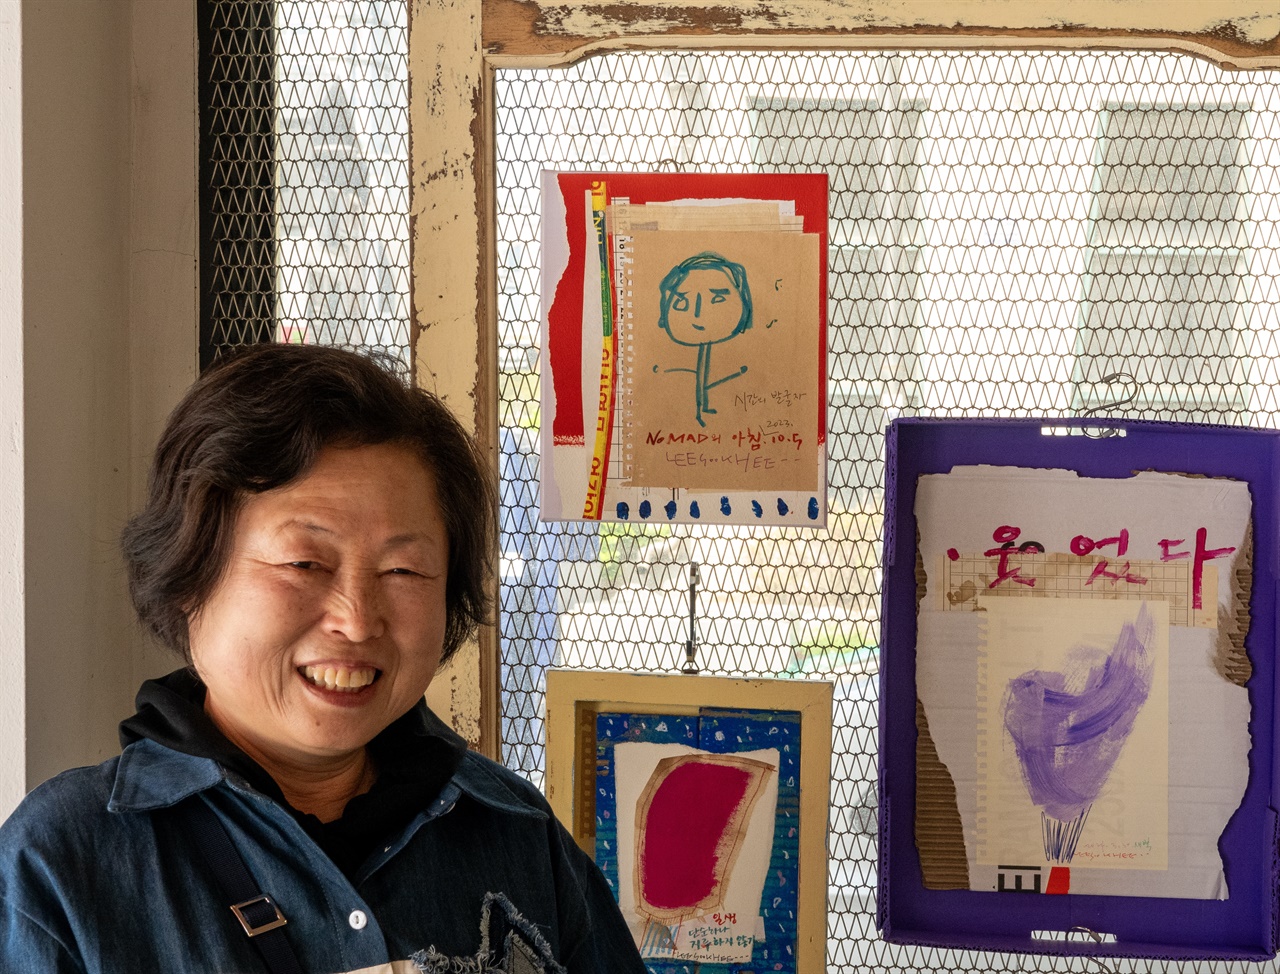  30년 동안, 안양문인협회에서 개최하는 시화전의 그림을 그리며 봉사했다는 이숙희 작가